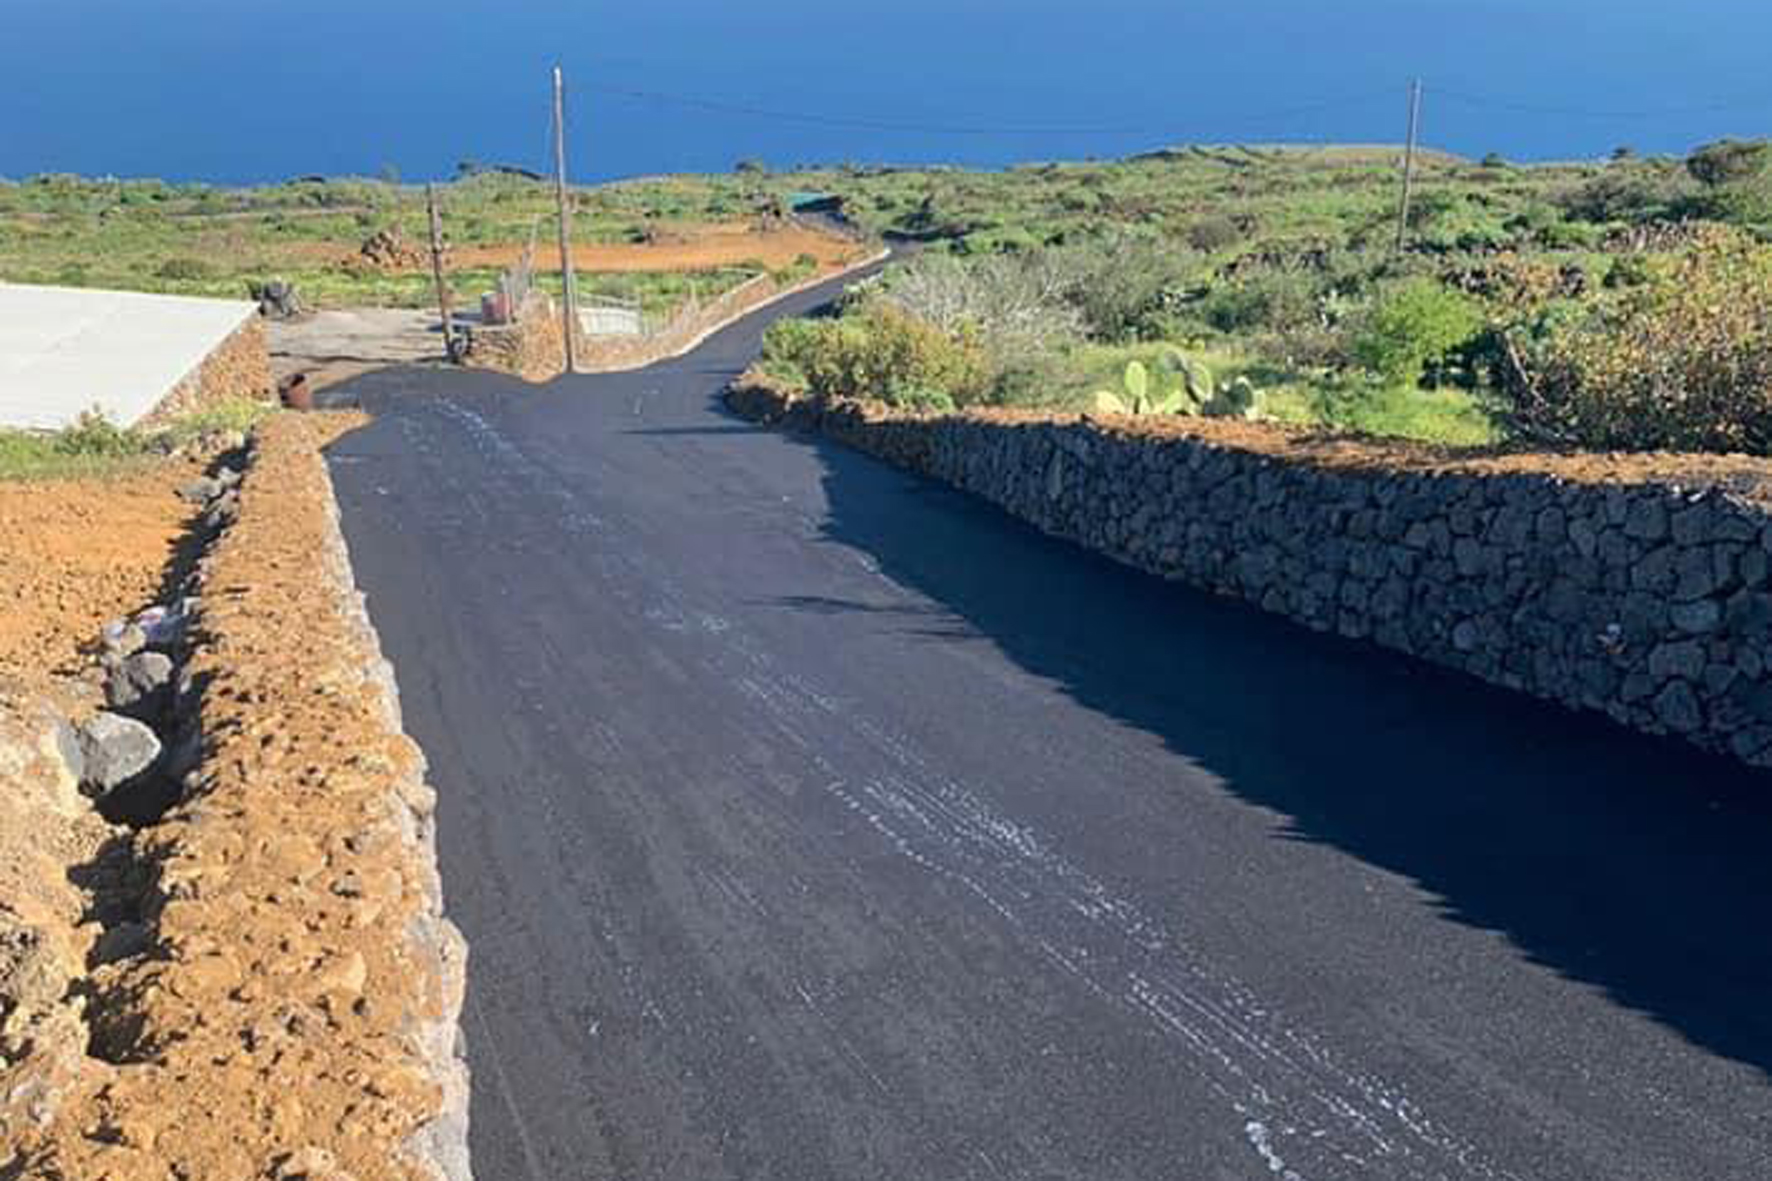 El Cabildo finaliza las obras de acondicionamiento de la pista agrícola “Campos Viejos” en El Pinar